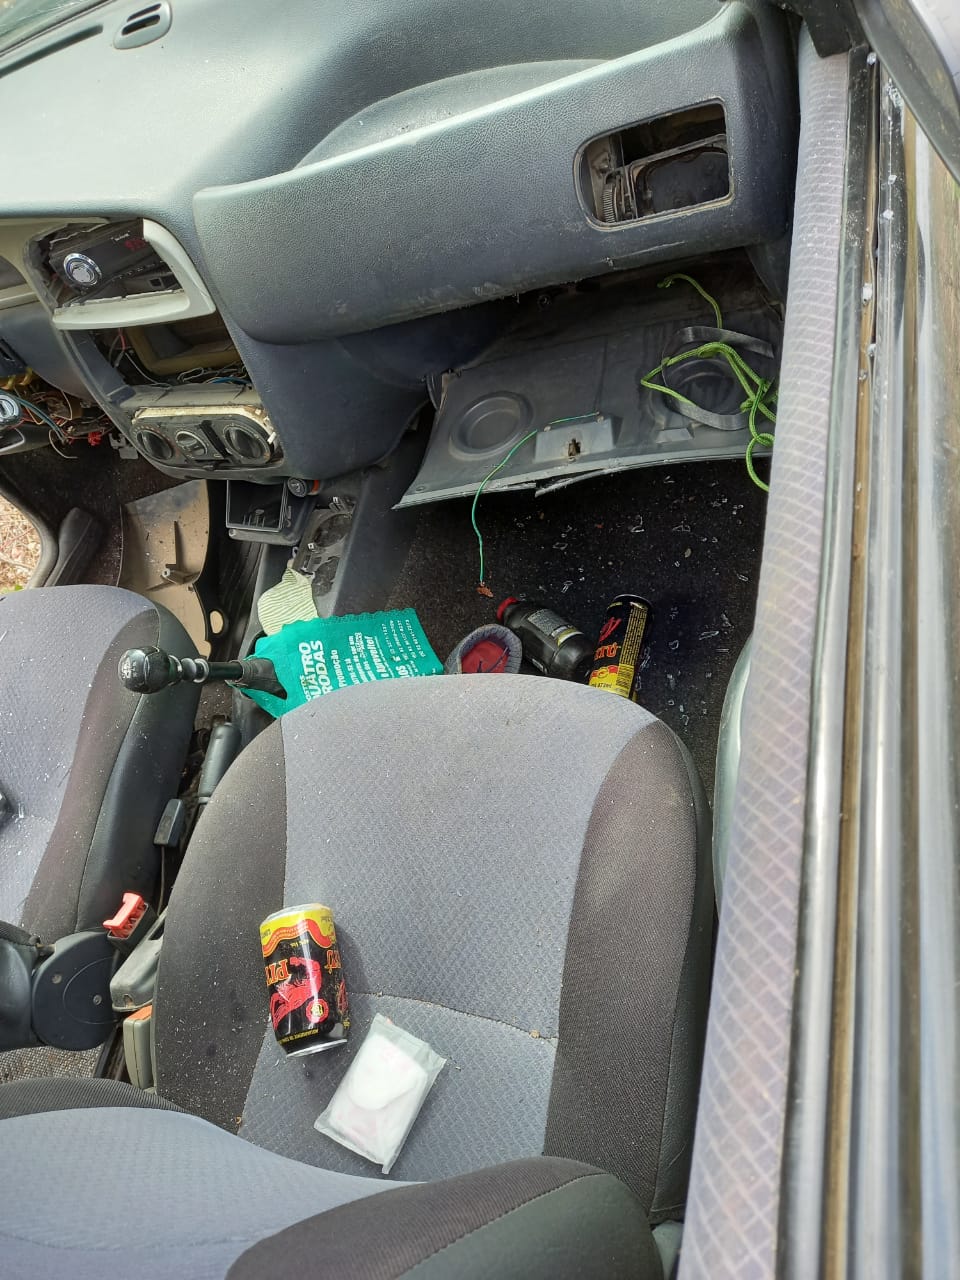 Latas de bebidas foram encontradas dentro do carro (Foto: Ítalo Timóteo)